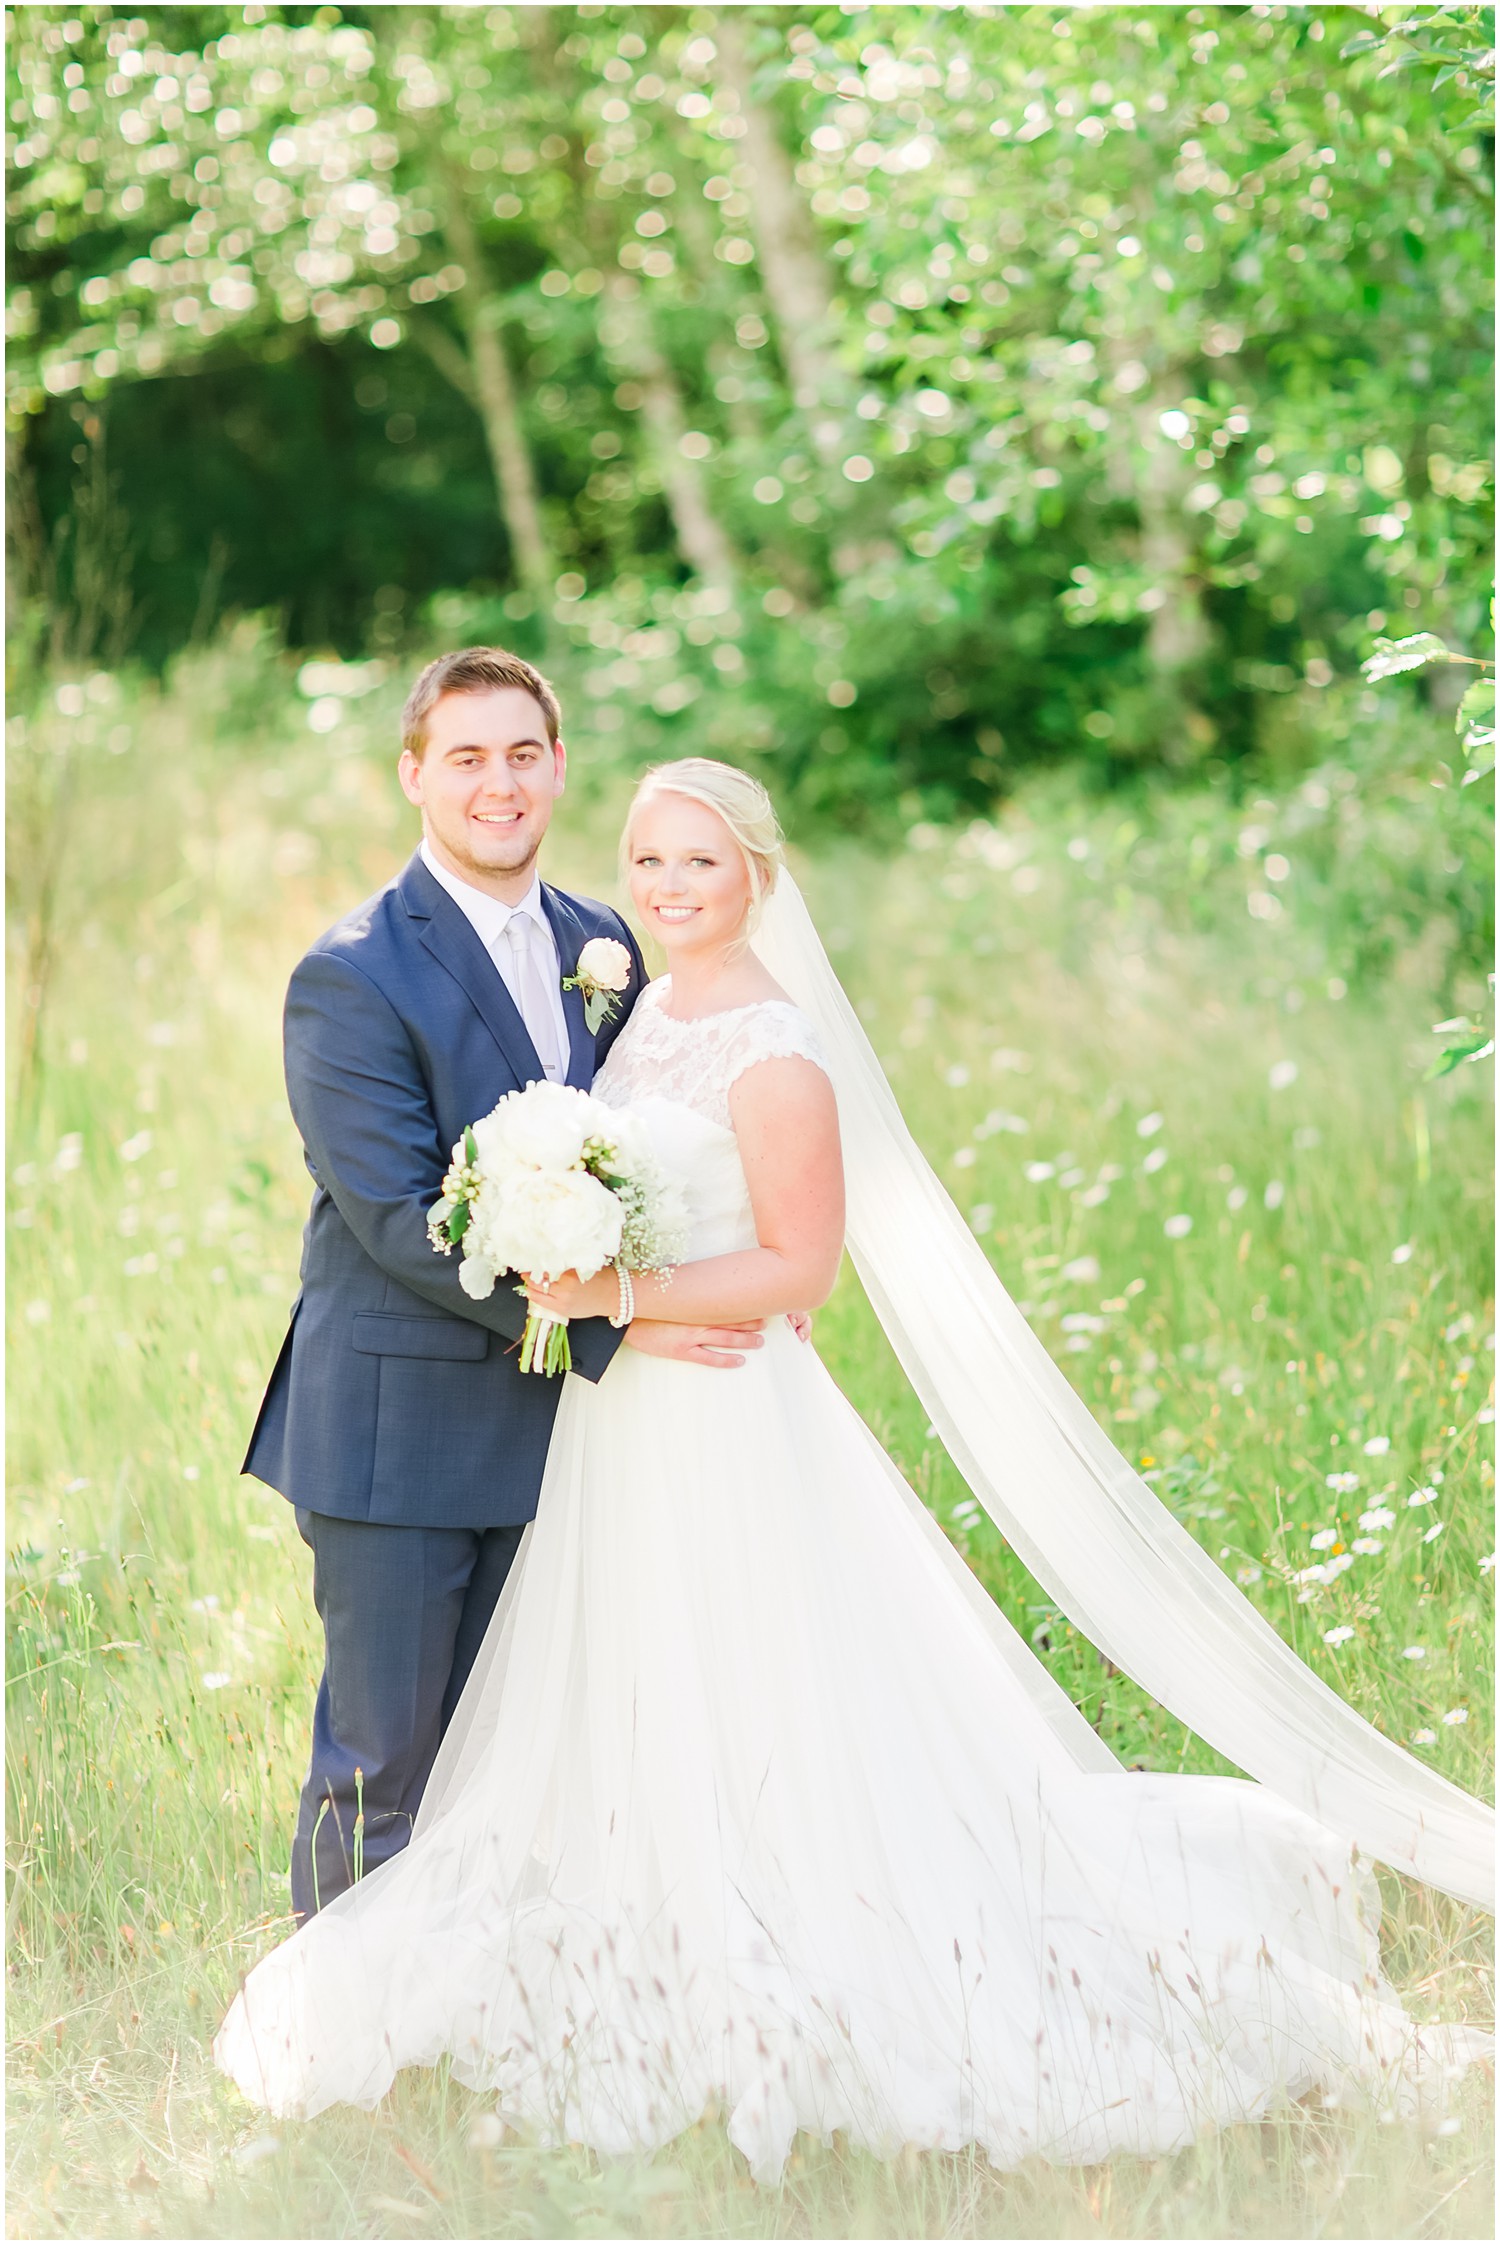 Dusty Blue Backyard Wedding | Daniel & Mackenzie